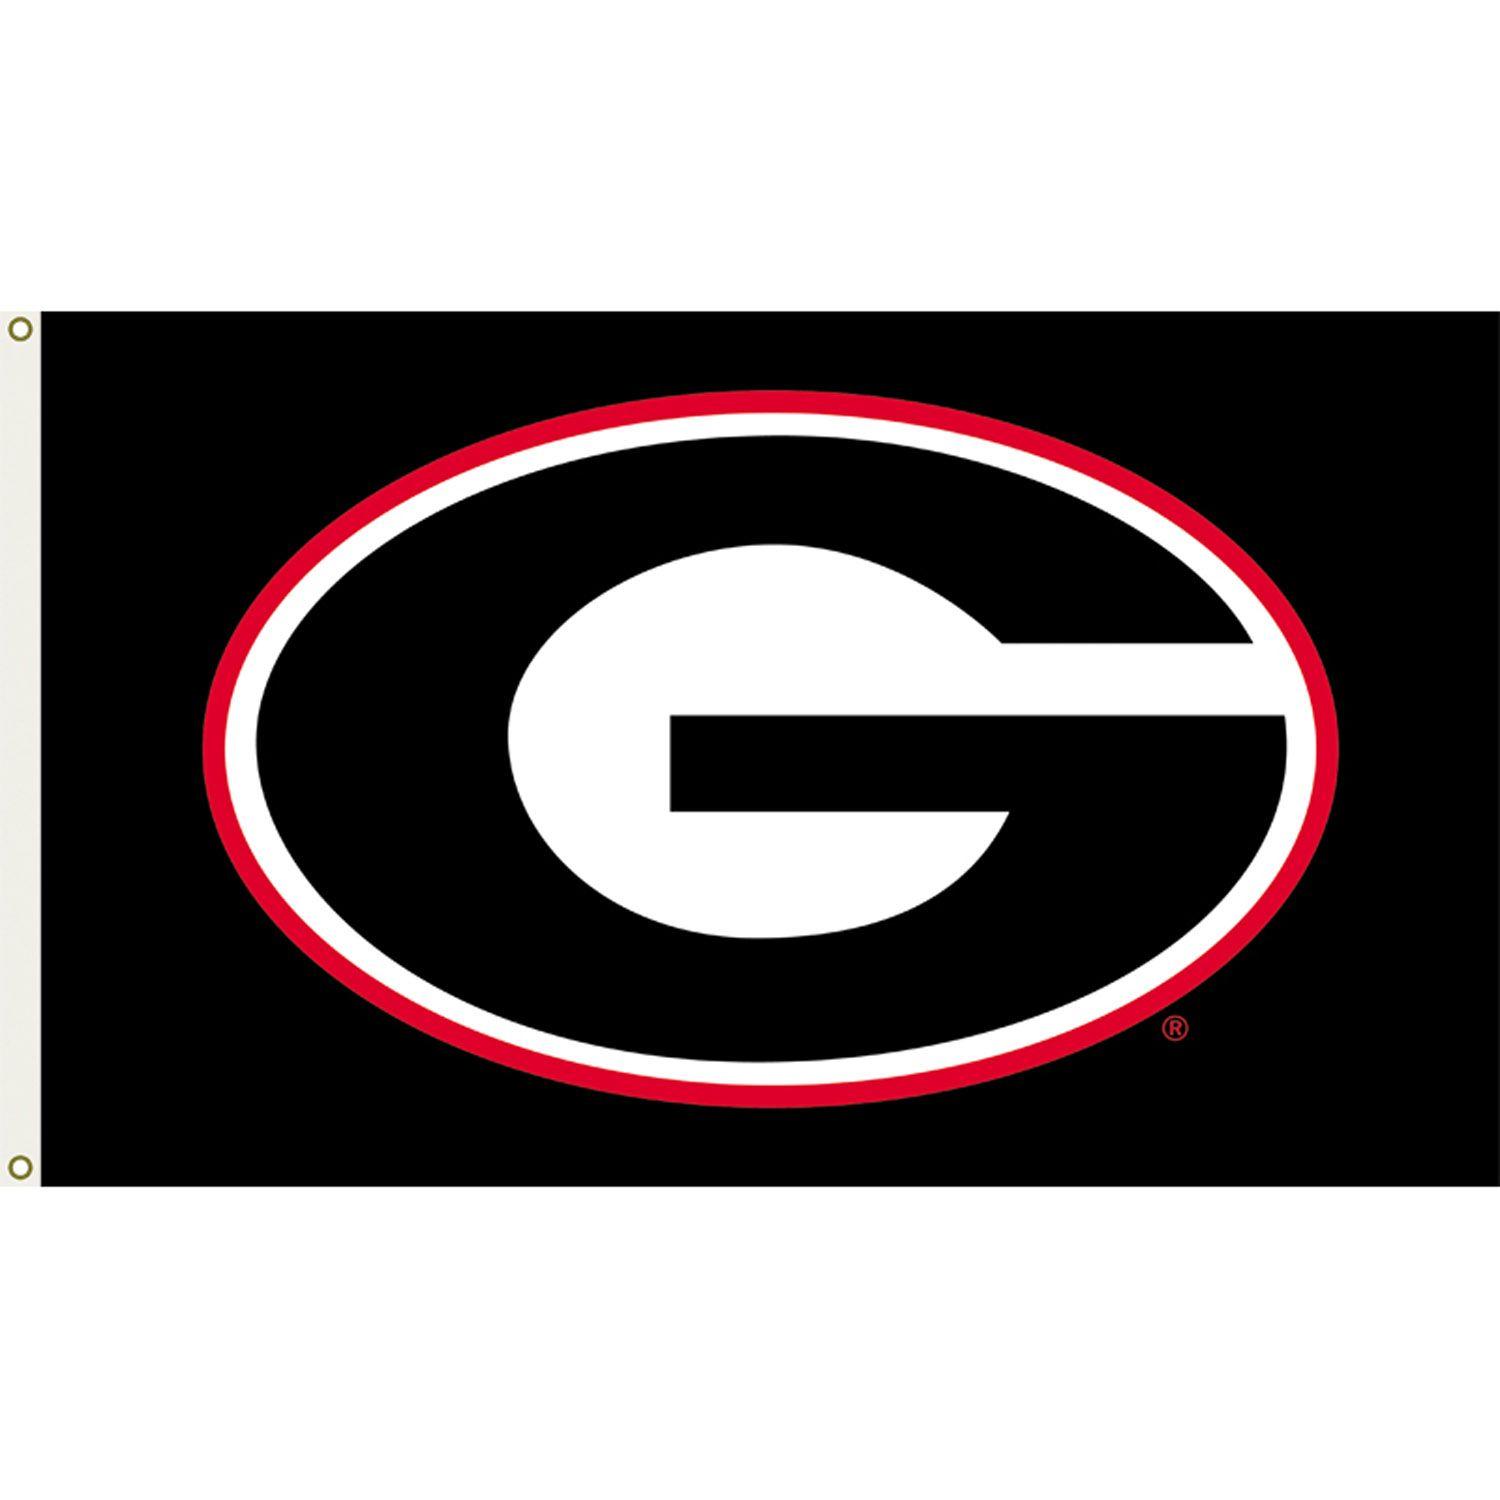 Georgia Bulldogs Logo - Free Georgia Bulldogs Clipart, Download Free Clip Art, Free Clip Art ...